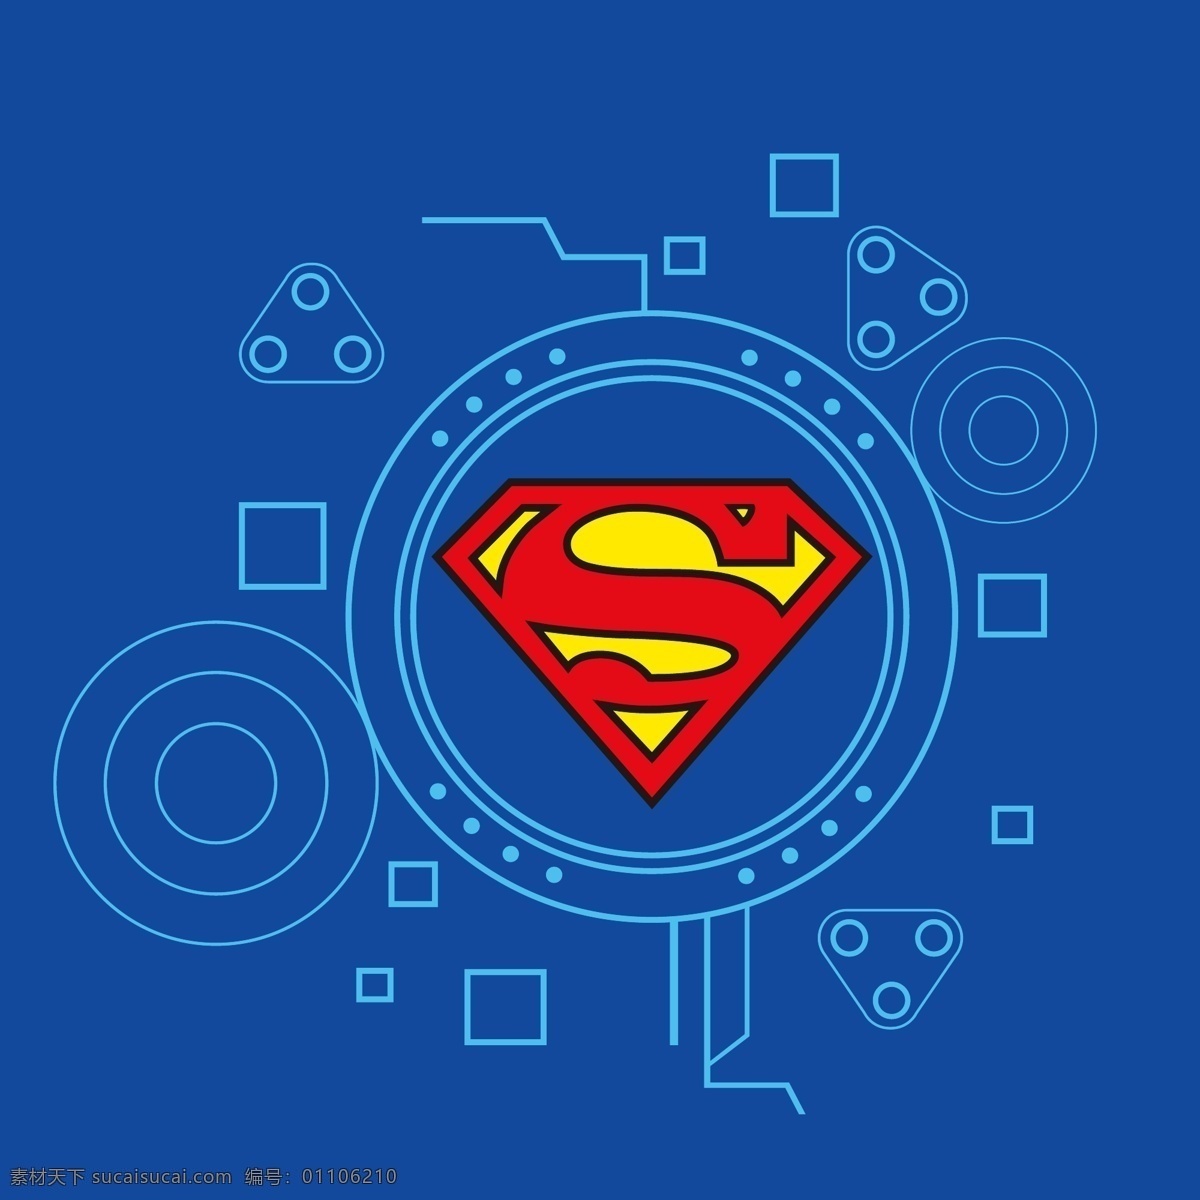 超人标志 标志 超人 superman 蝙蝠侠 batman 闪电侠 flash 华纳 dc漫画 超级英雄 英雄联盟 卡通形象 其他人物 矢量人物 矢量 超人英雄标志 小图标 标识标志图标